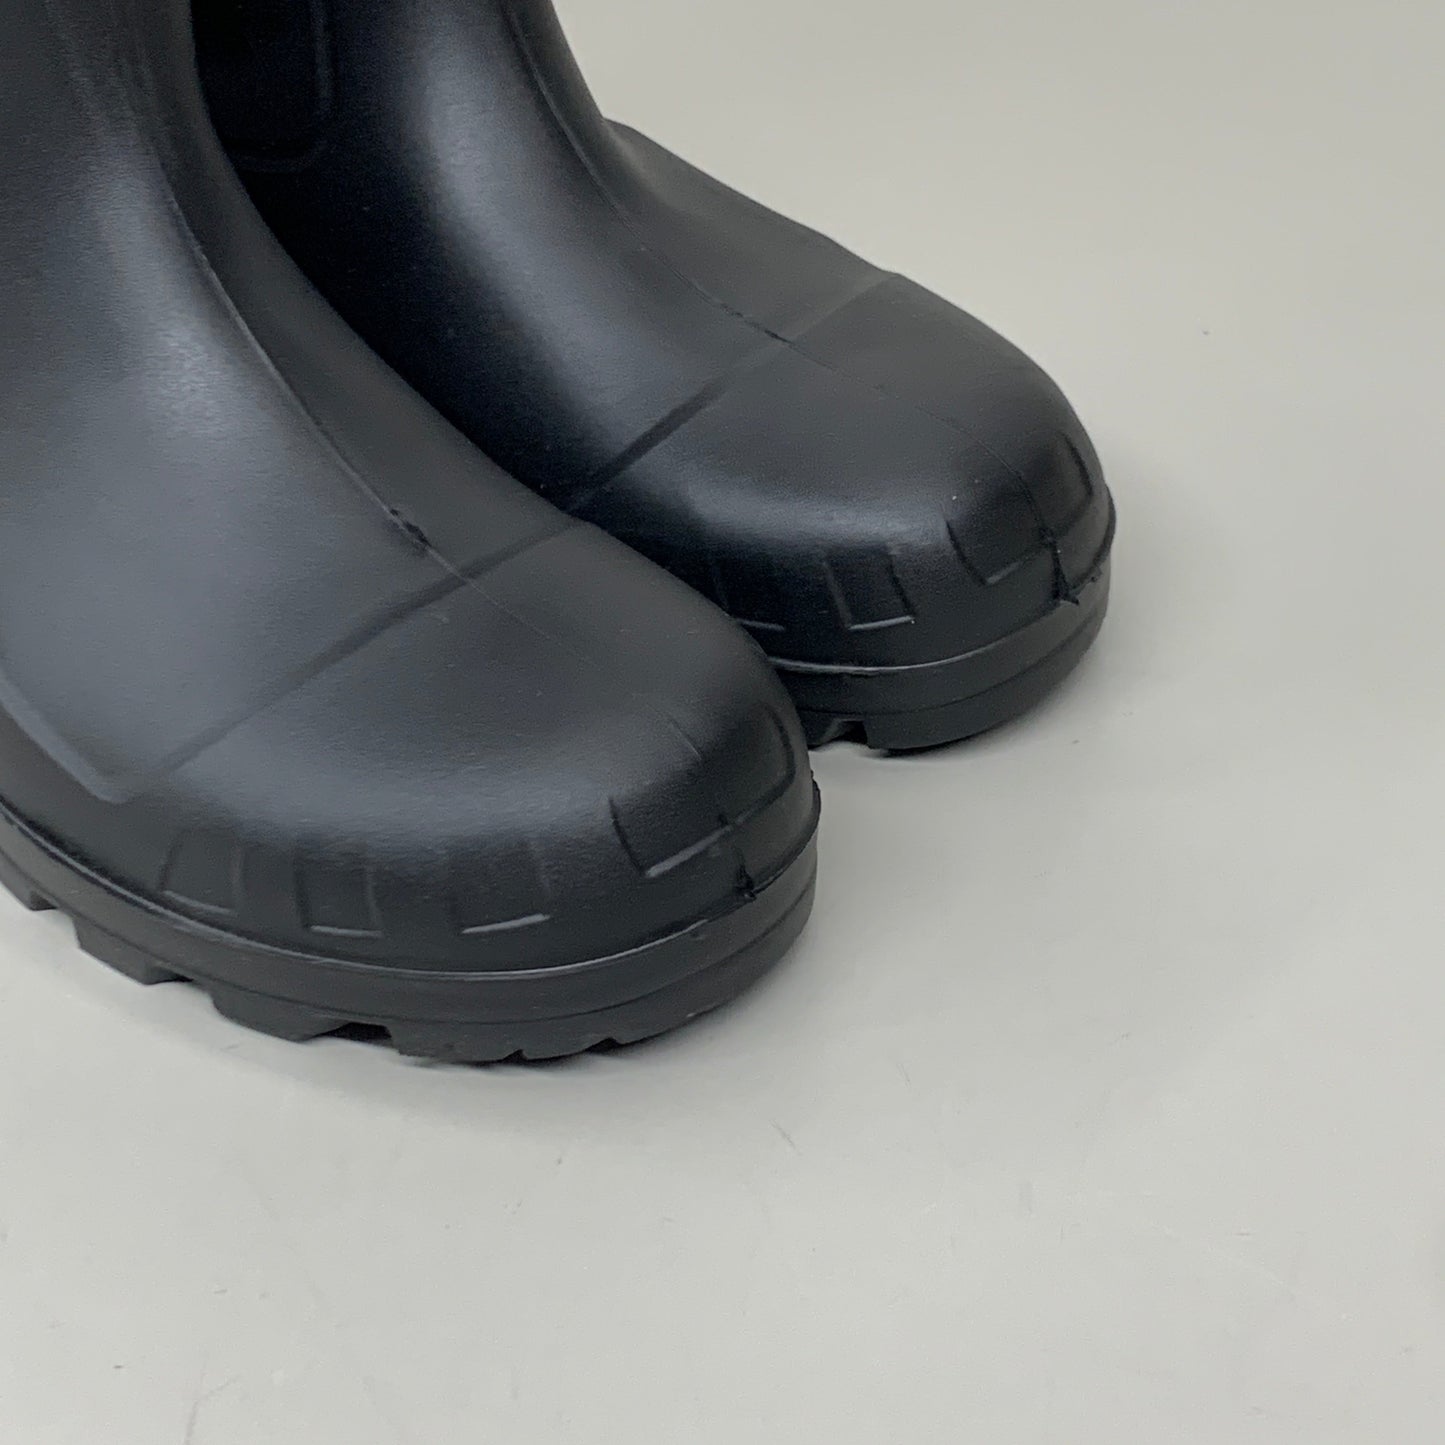 DUNLOP Steel Toe Safety Boots Waterproof Black Sz M 8 W 10 #86776